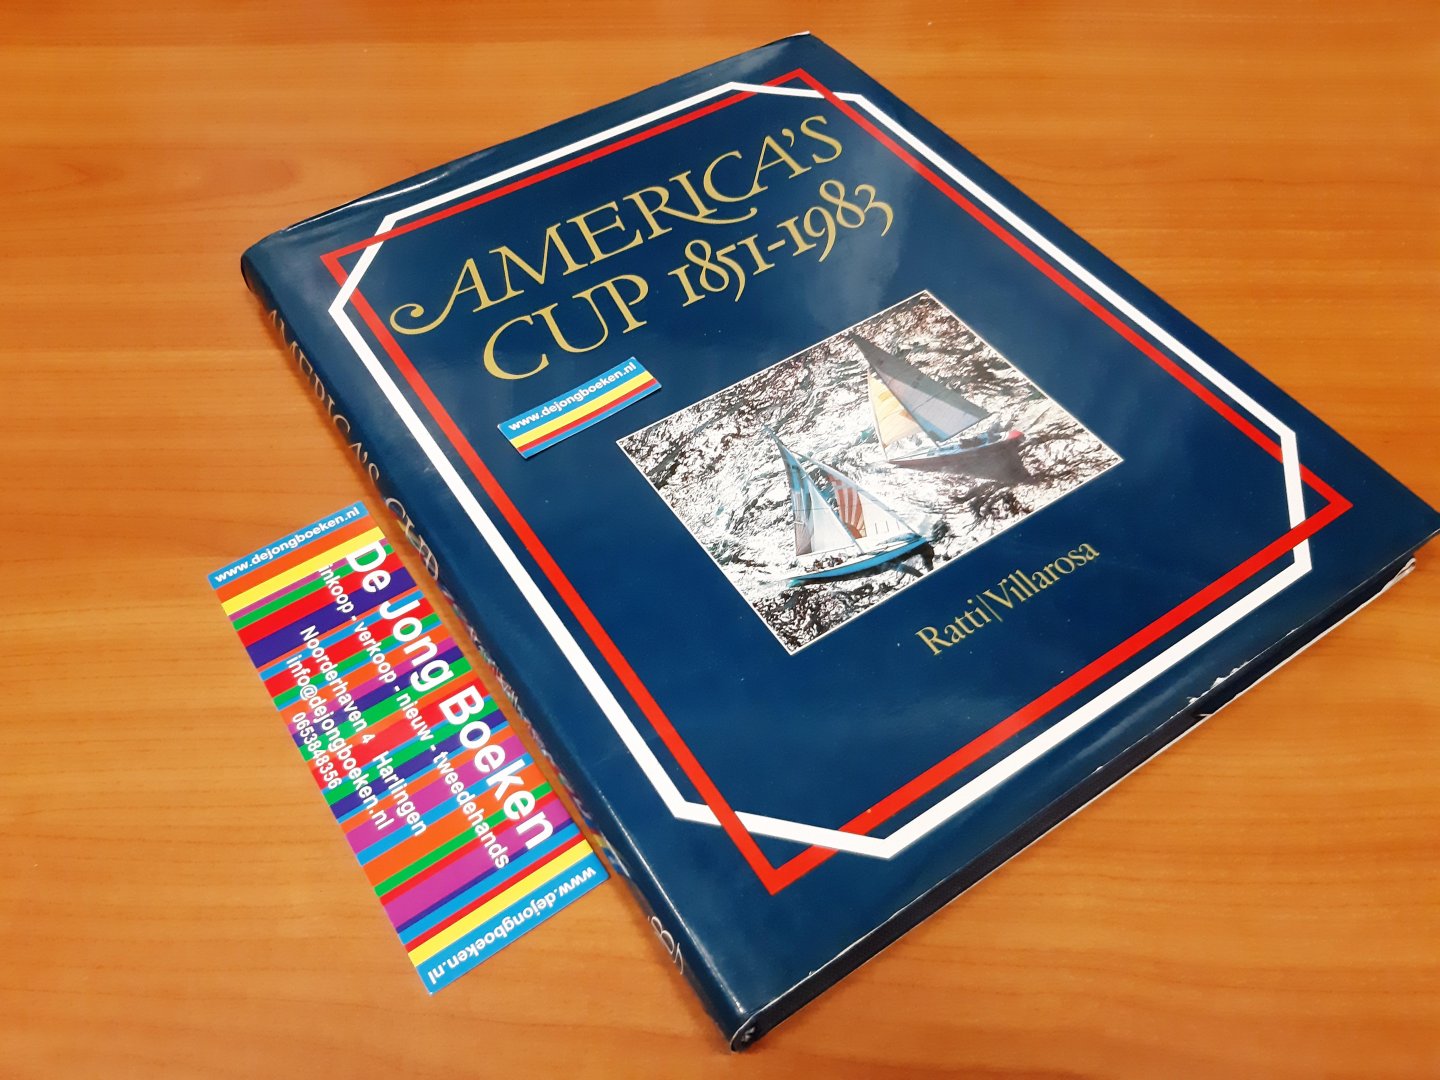 Ratti - America s cup 1851-1983